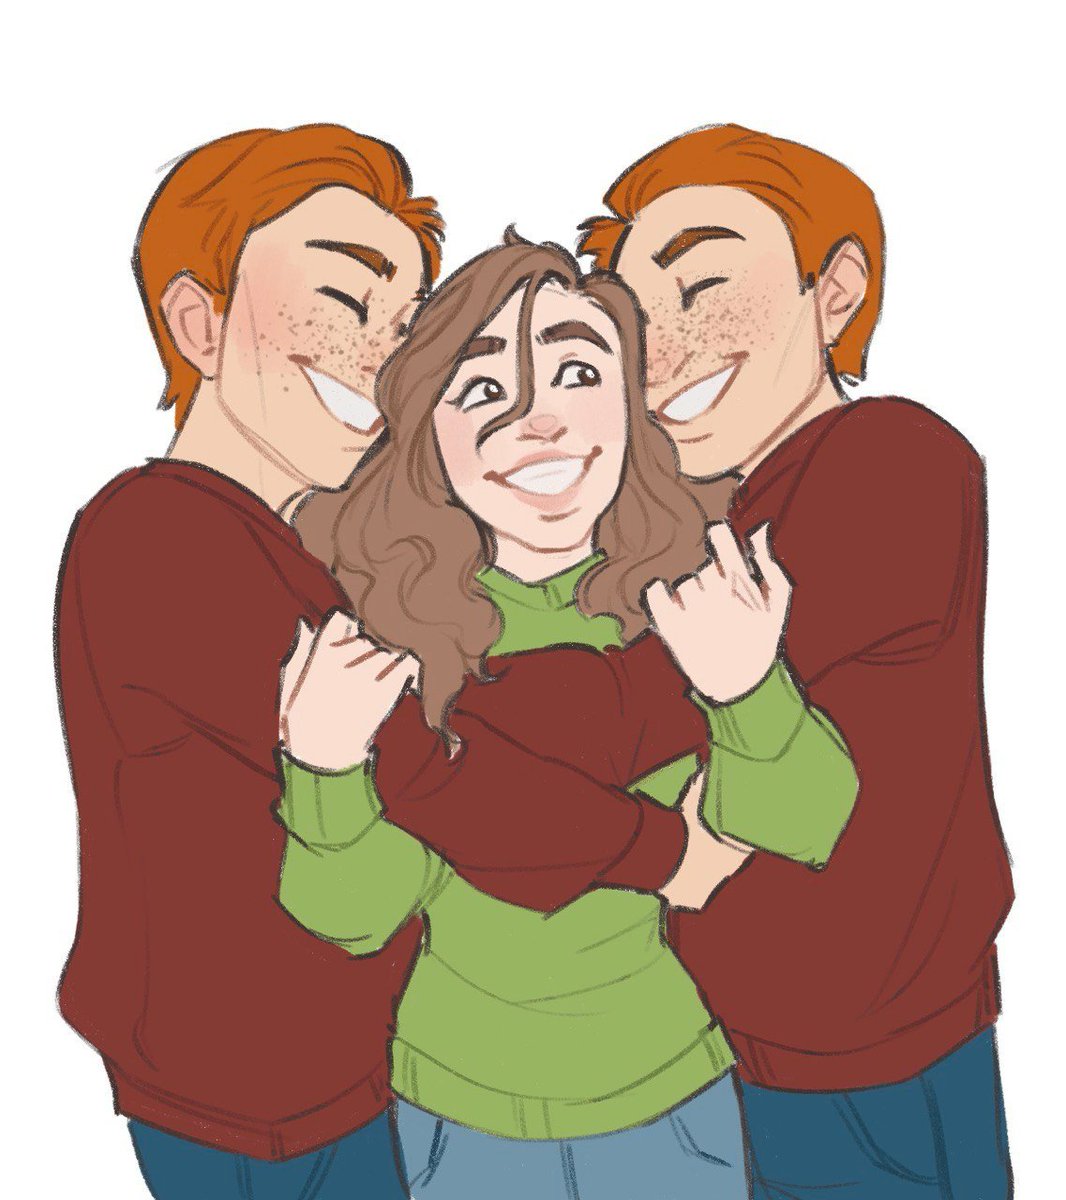 Friendly hugs! We all need it.
#WeasleyTwins #HermioneGranger